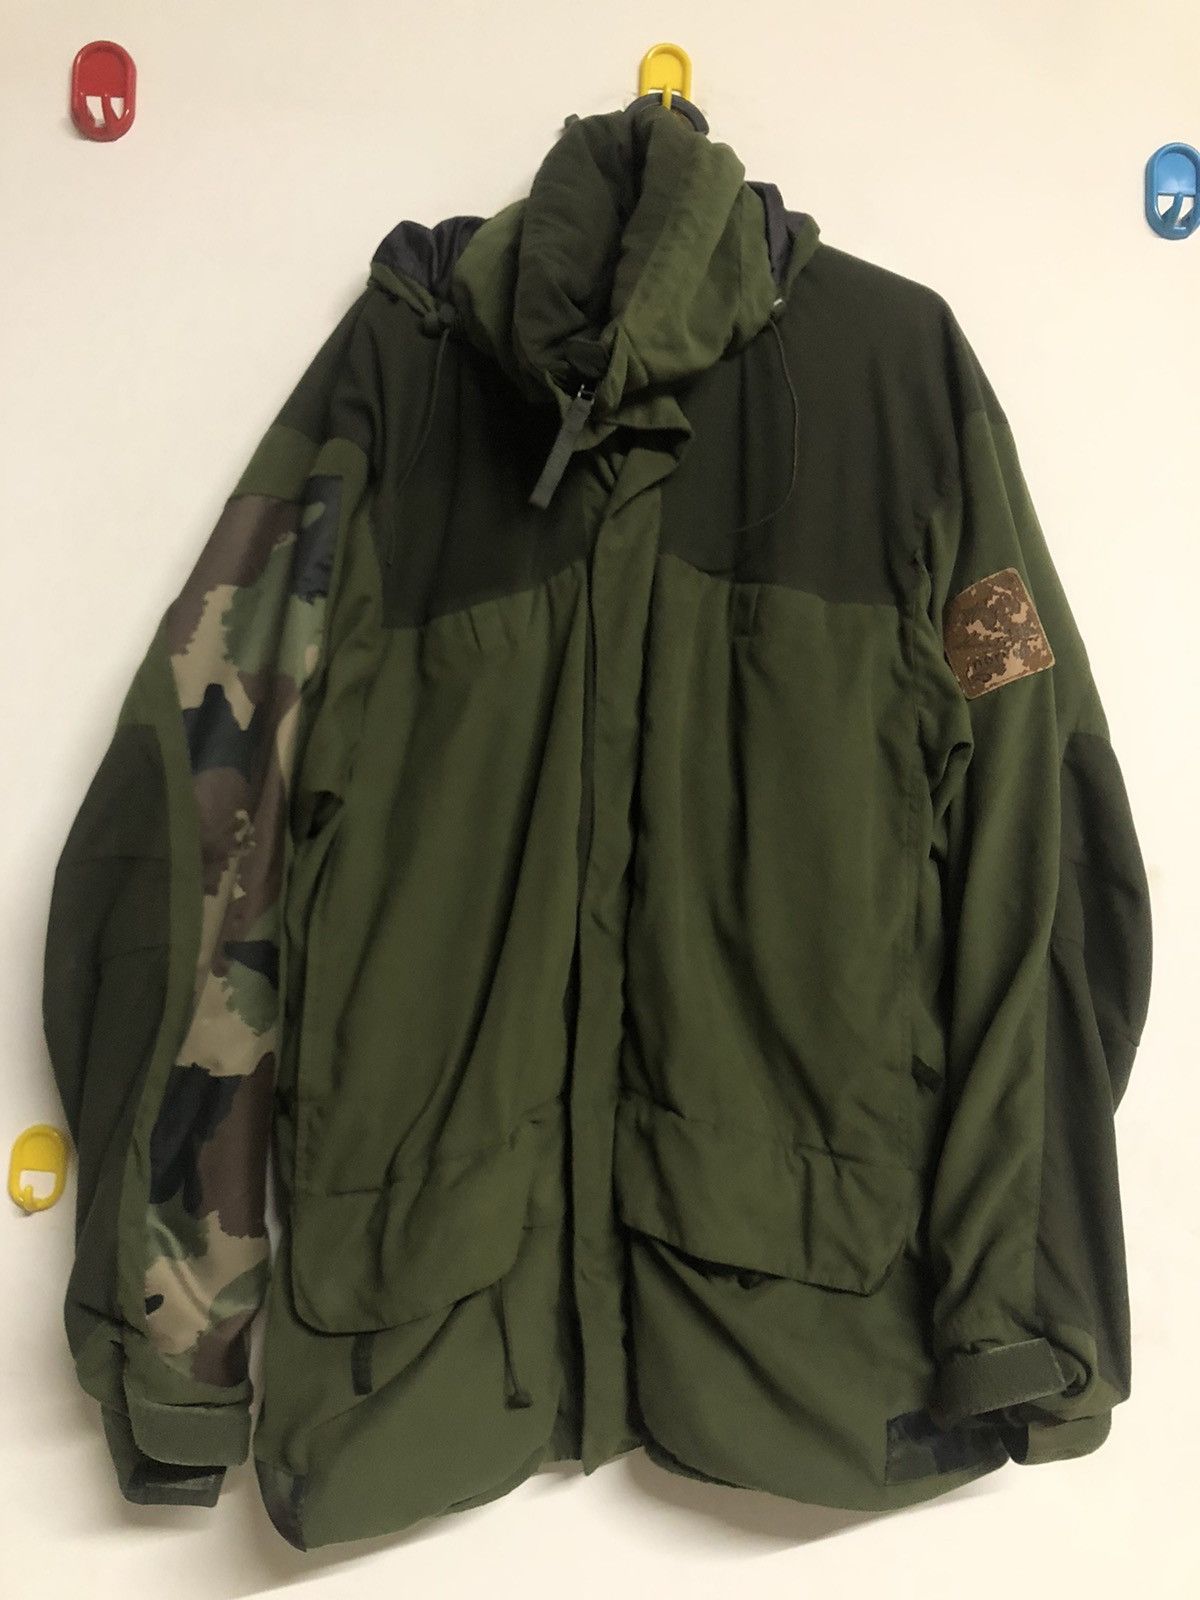 Outdoor Life Norrona Finnskogen military multi pocket gore-tex jacket ...